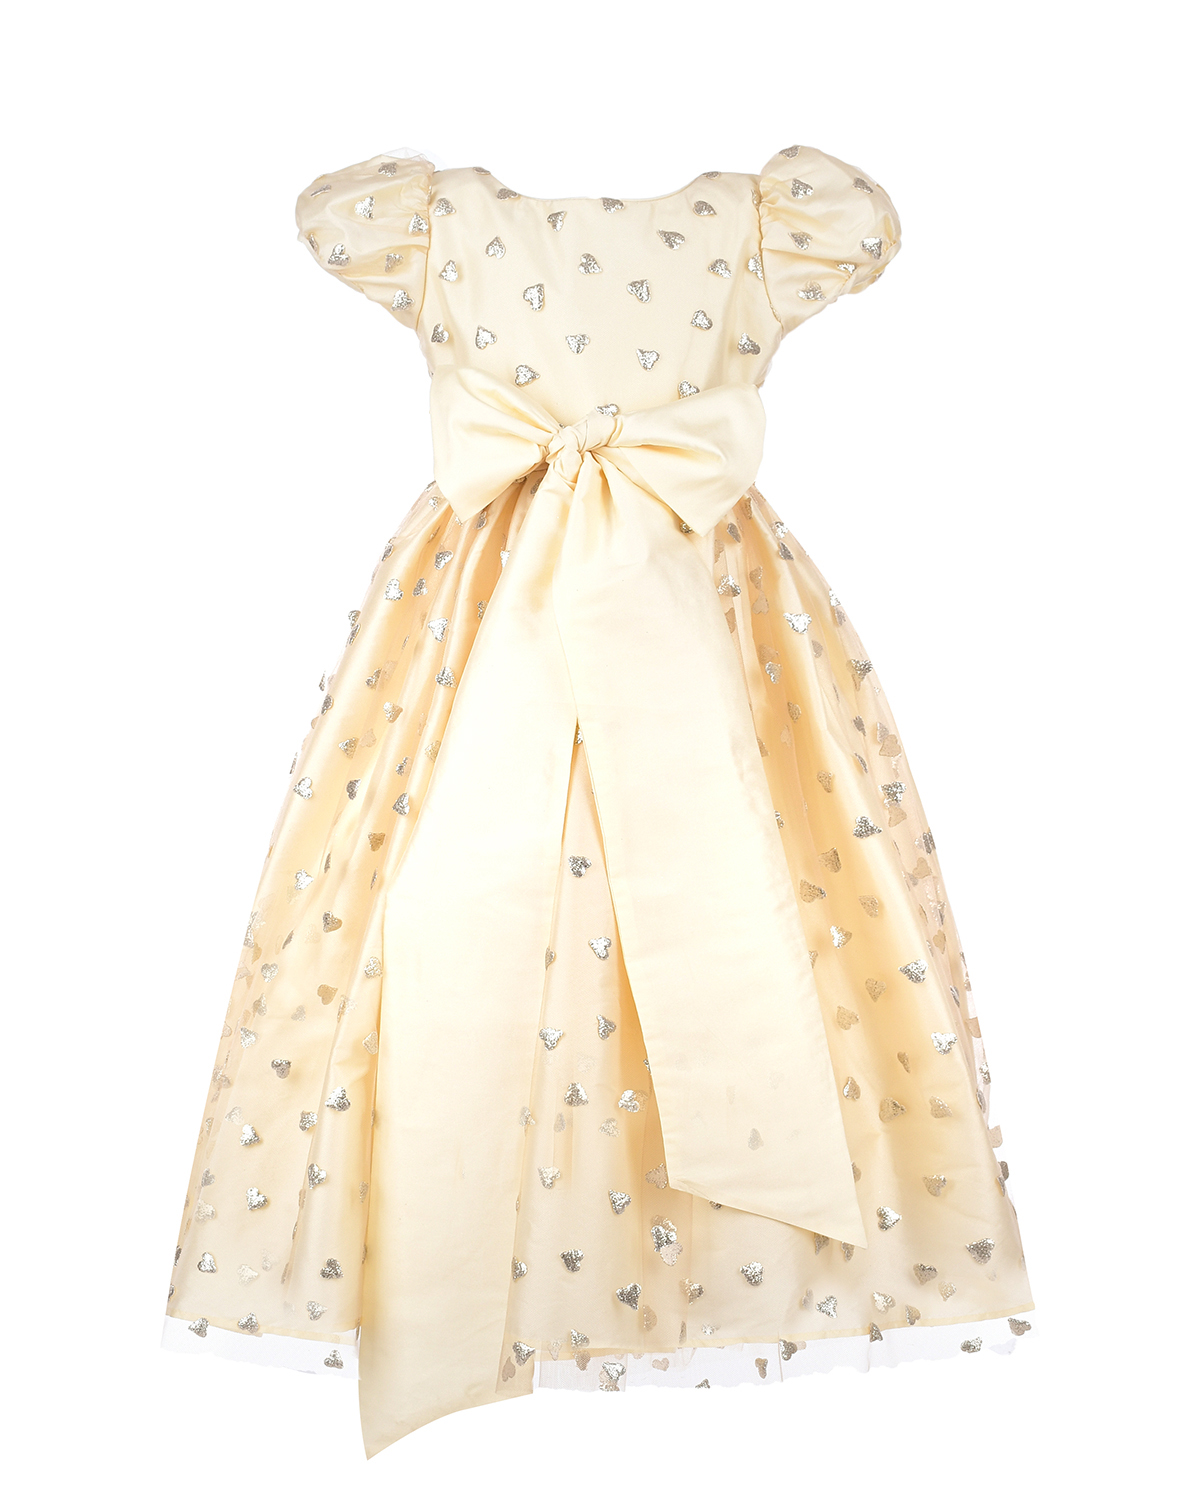 Шелковое платье кремового цвета с декором "сердца", размер 86